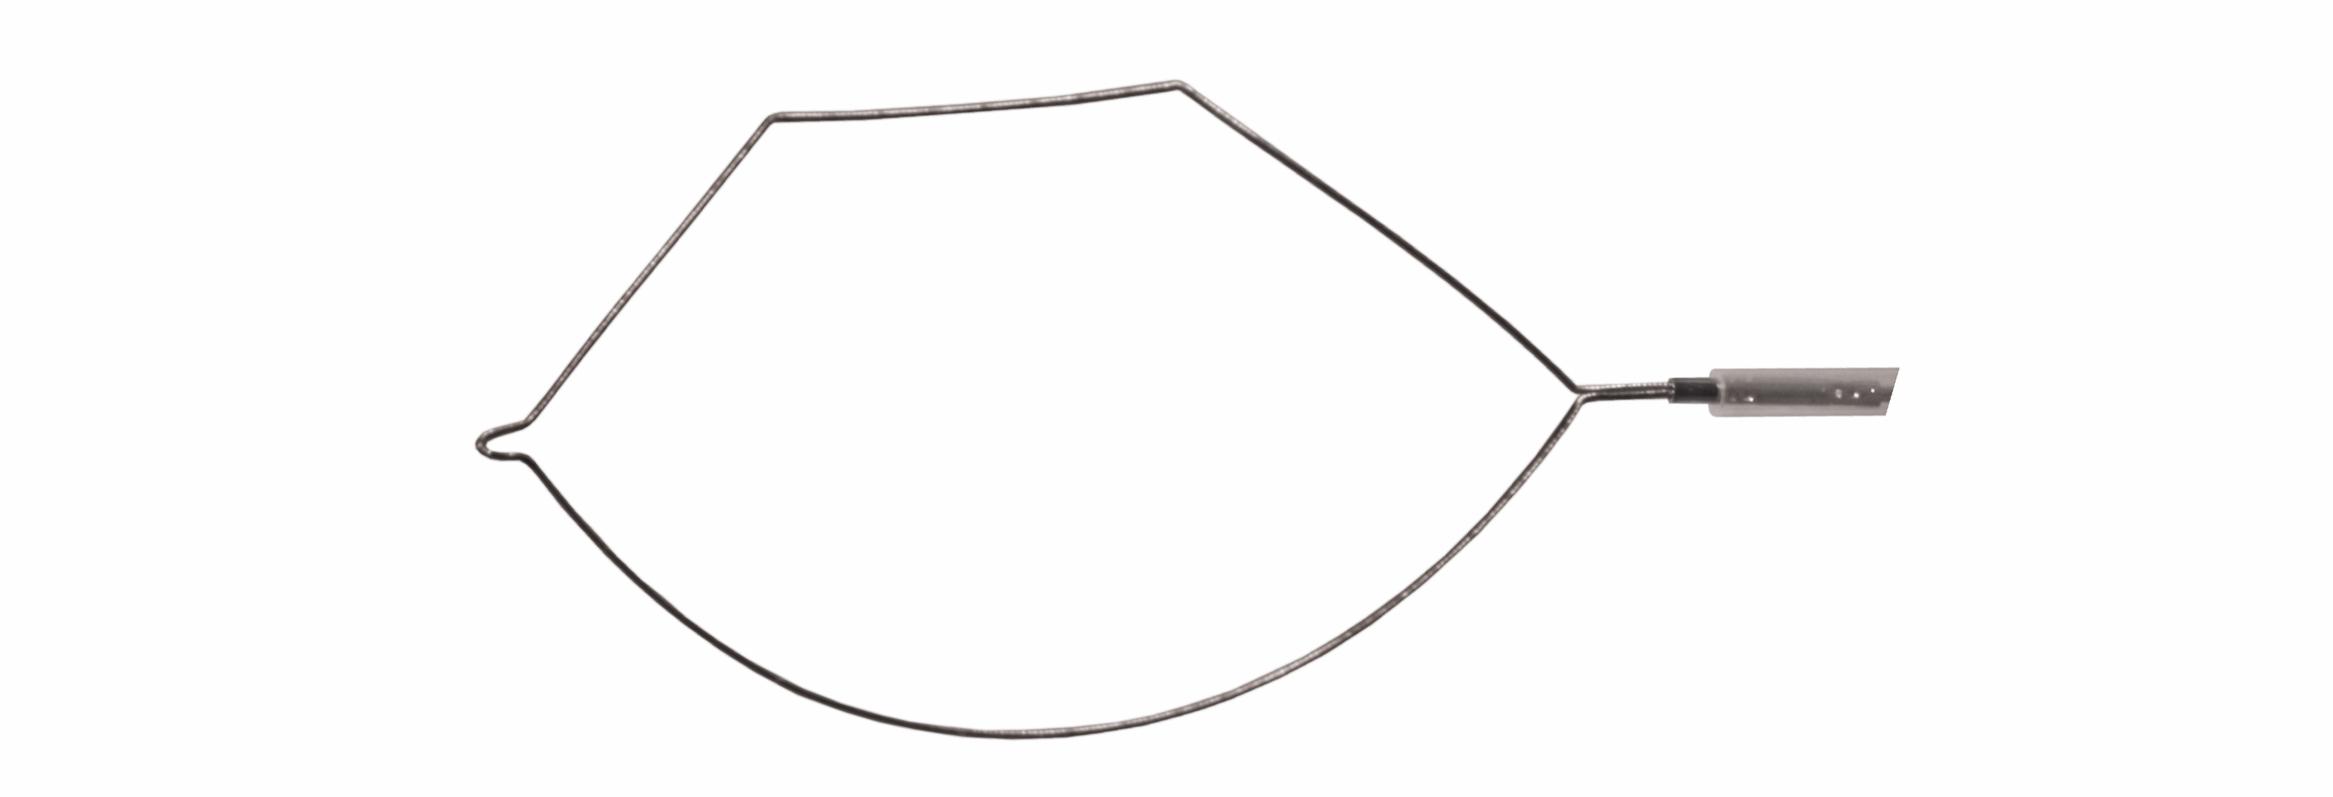 Петля комбинированная к гибким эндоскопам для канала 2,8 мм длиной 2400 мм (без рукоятки)